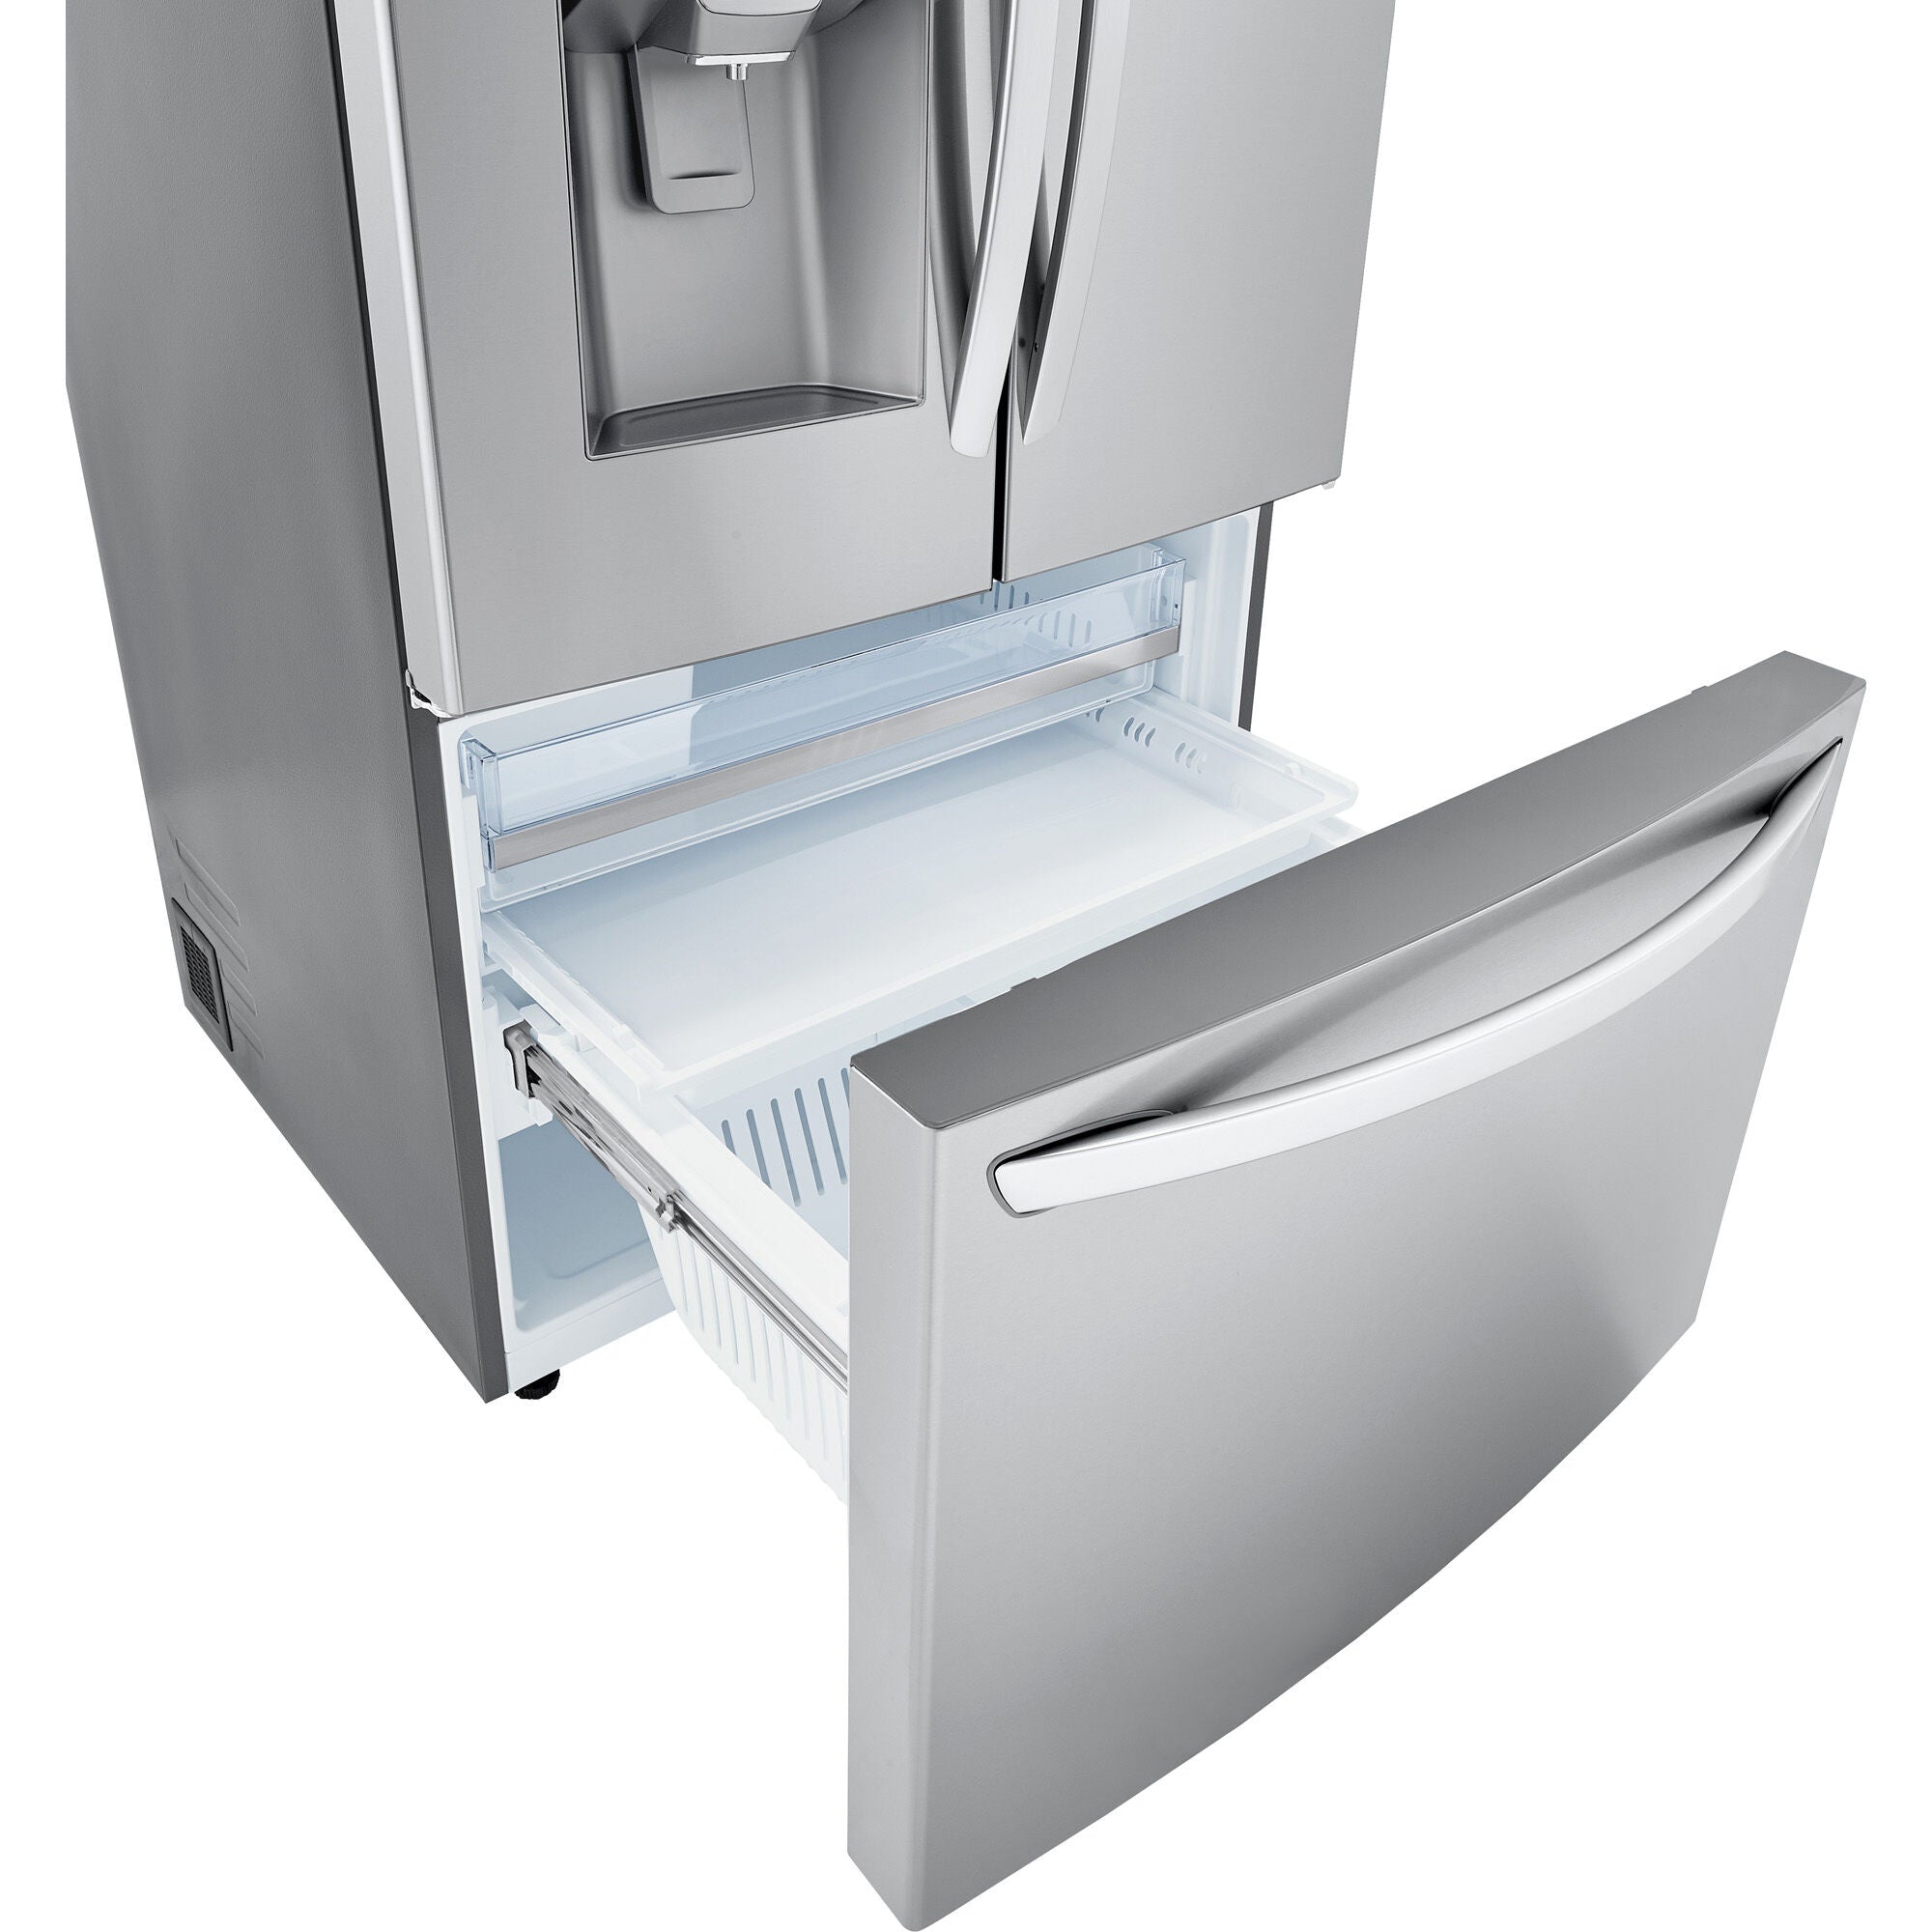 LG 36 Inch 3-Door French Door Refrigerator in Stainless Steel 24 Cu. Ft. (LRFDC2406S)